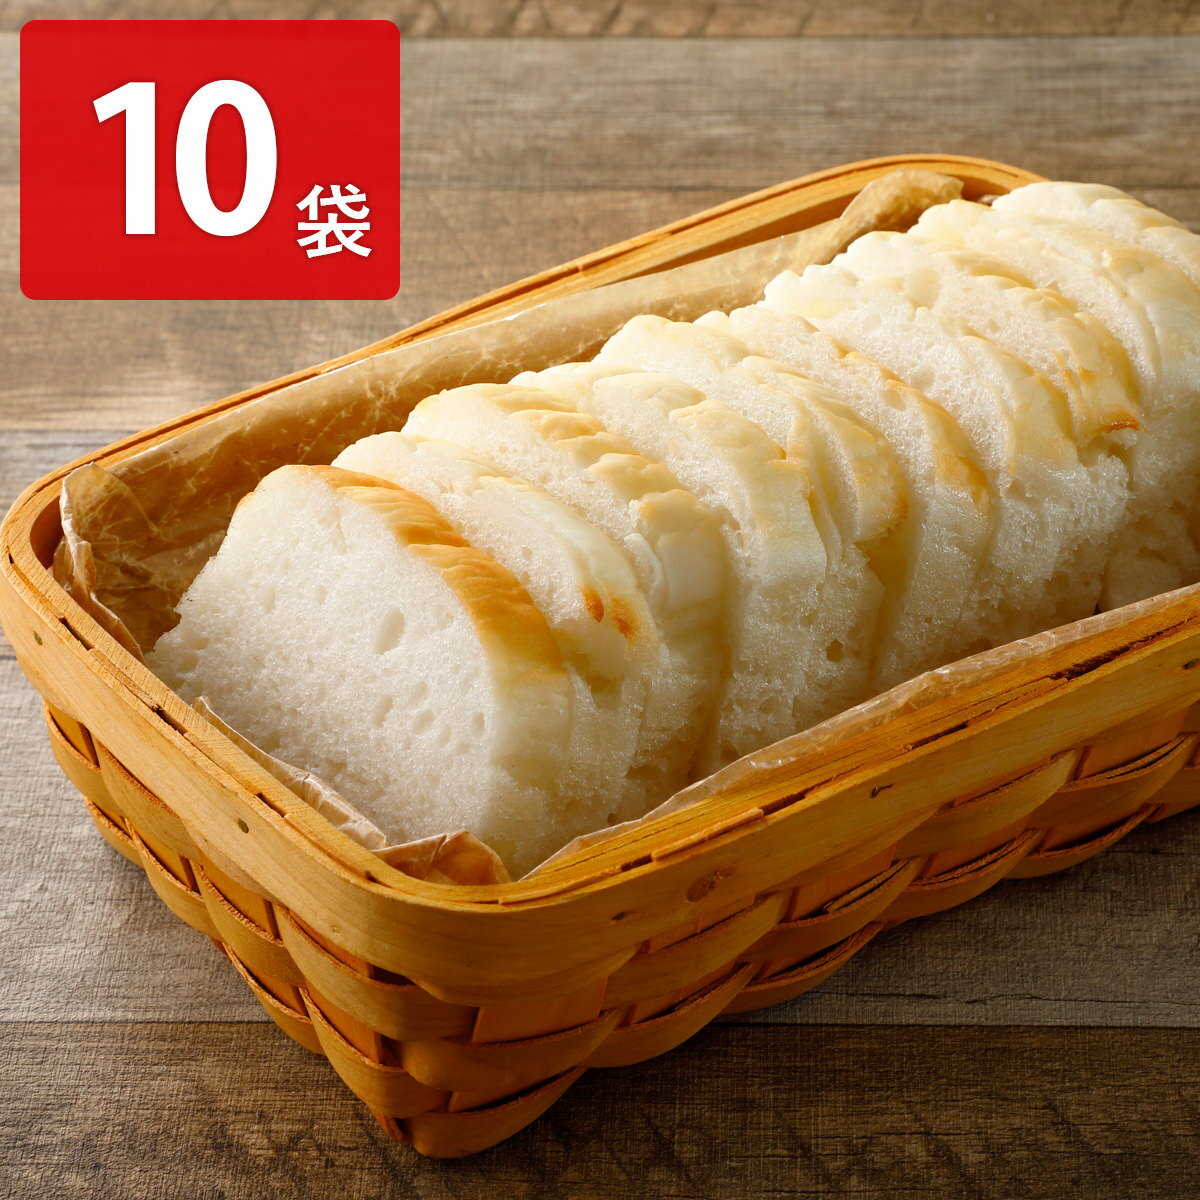 みんなの食卓 ふっくら米粉パン スライス 16枚入10袋セット パン グルテンフリー 米粉パン ニッポンハム 食パン アレルギー対応 お米パン